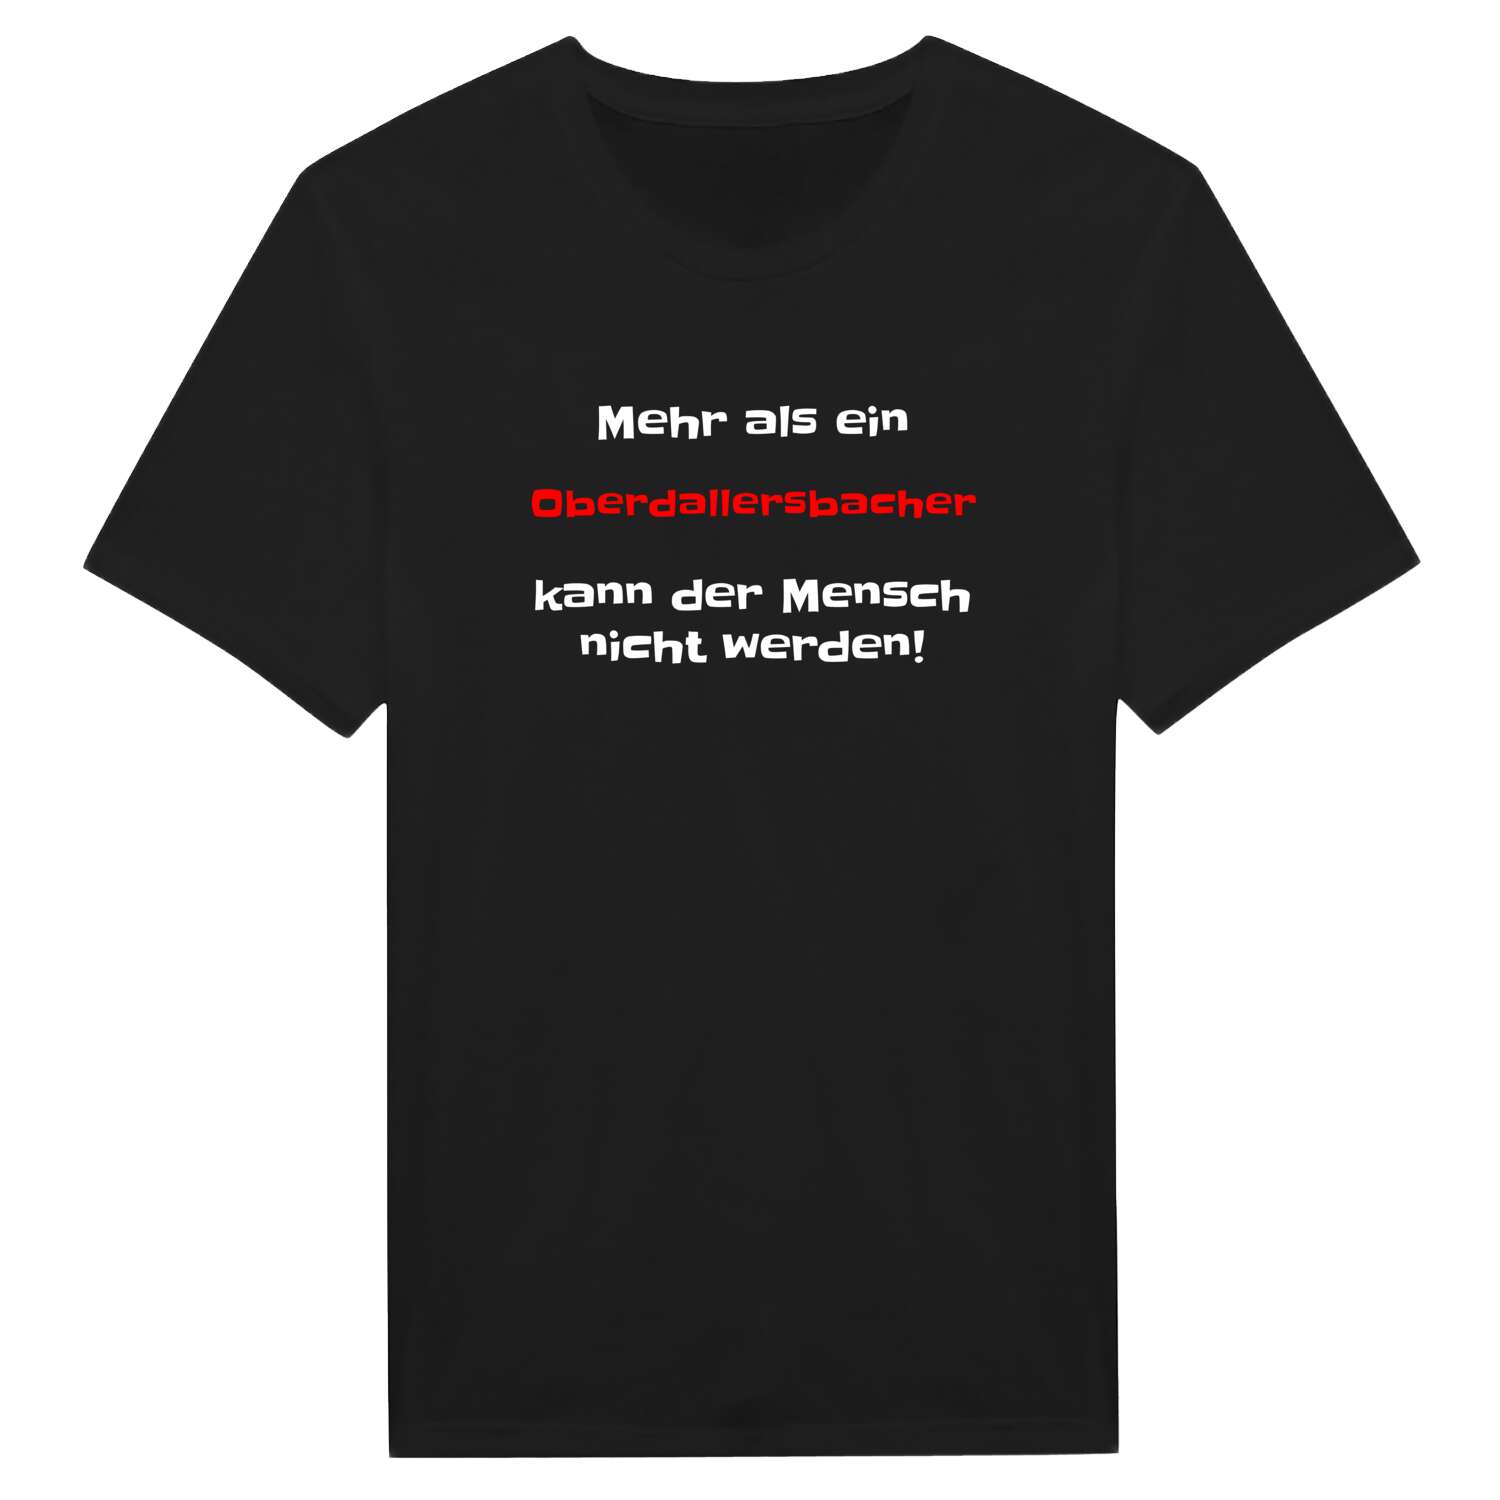 Oberdallersbach T-Shirt »Mehr als ein«